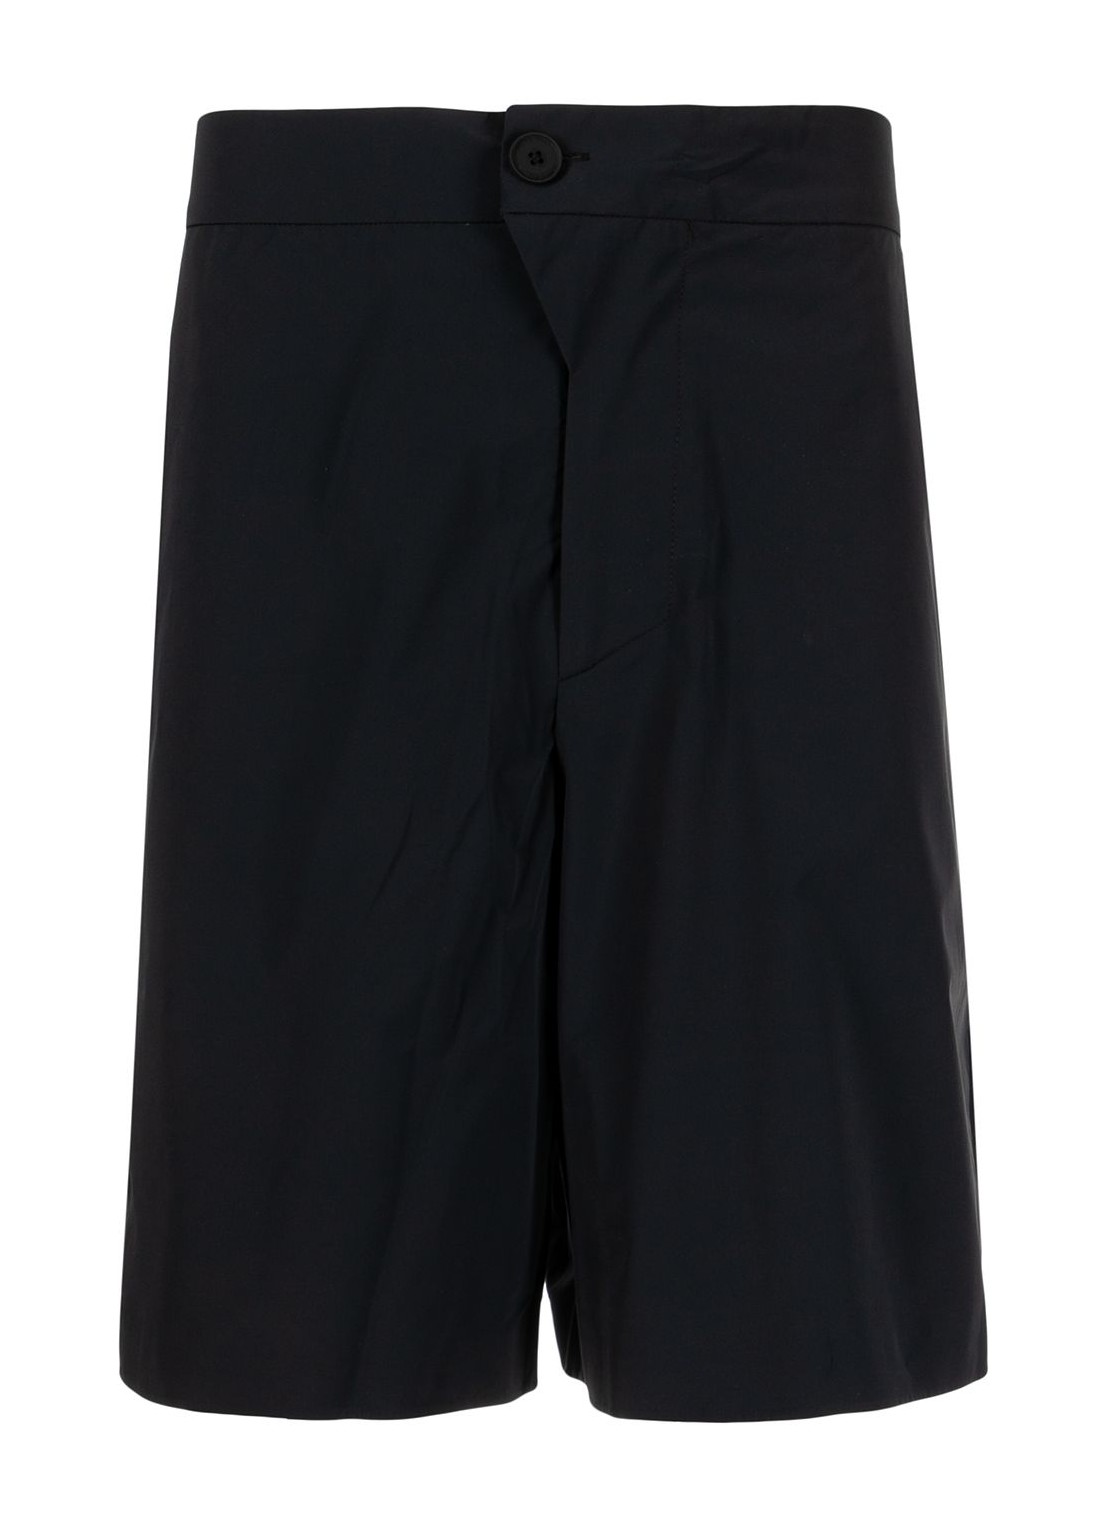 Pantalon corto a-cold-wall* short pant man essentials shorts acwmb069 black black talla L
 